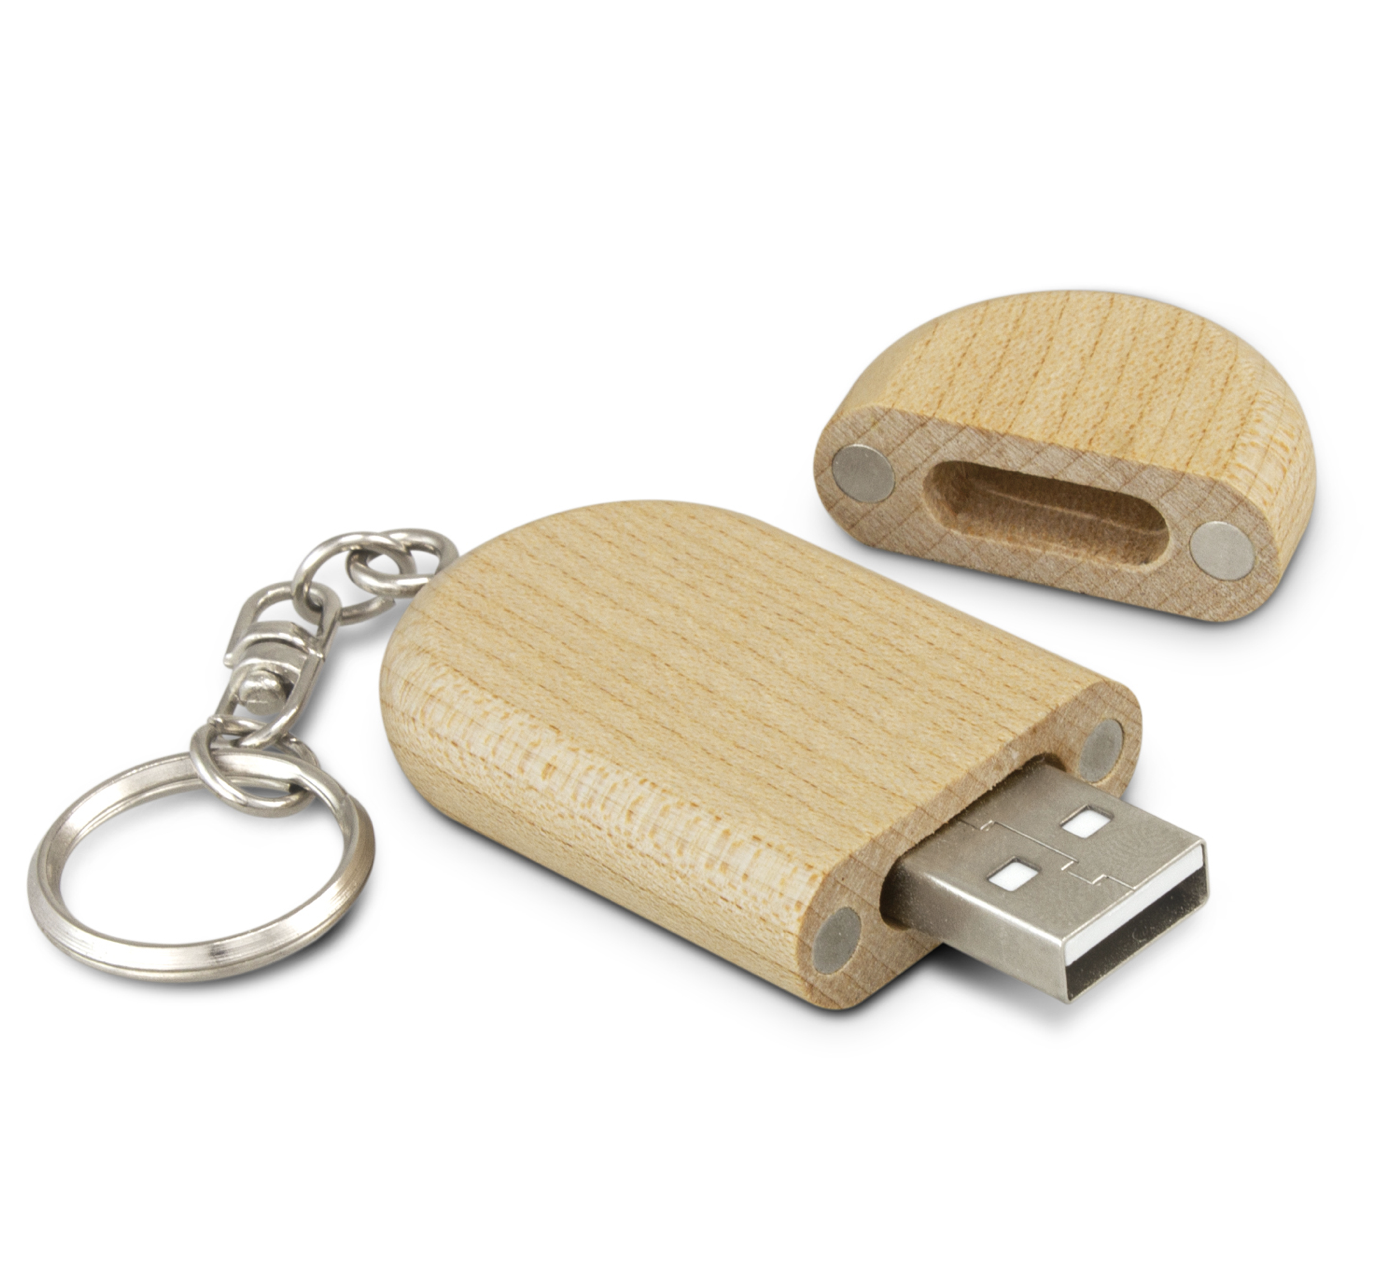 USB's - Flash Drives